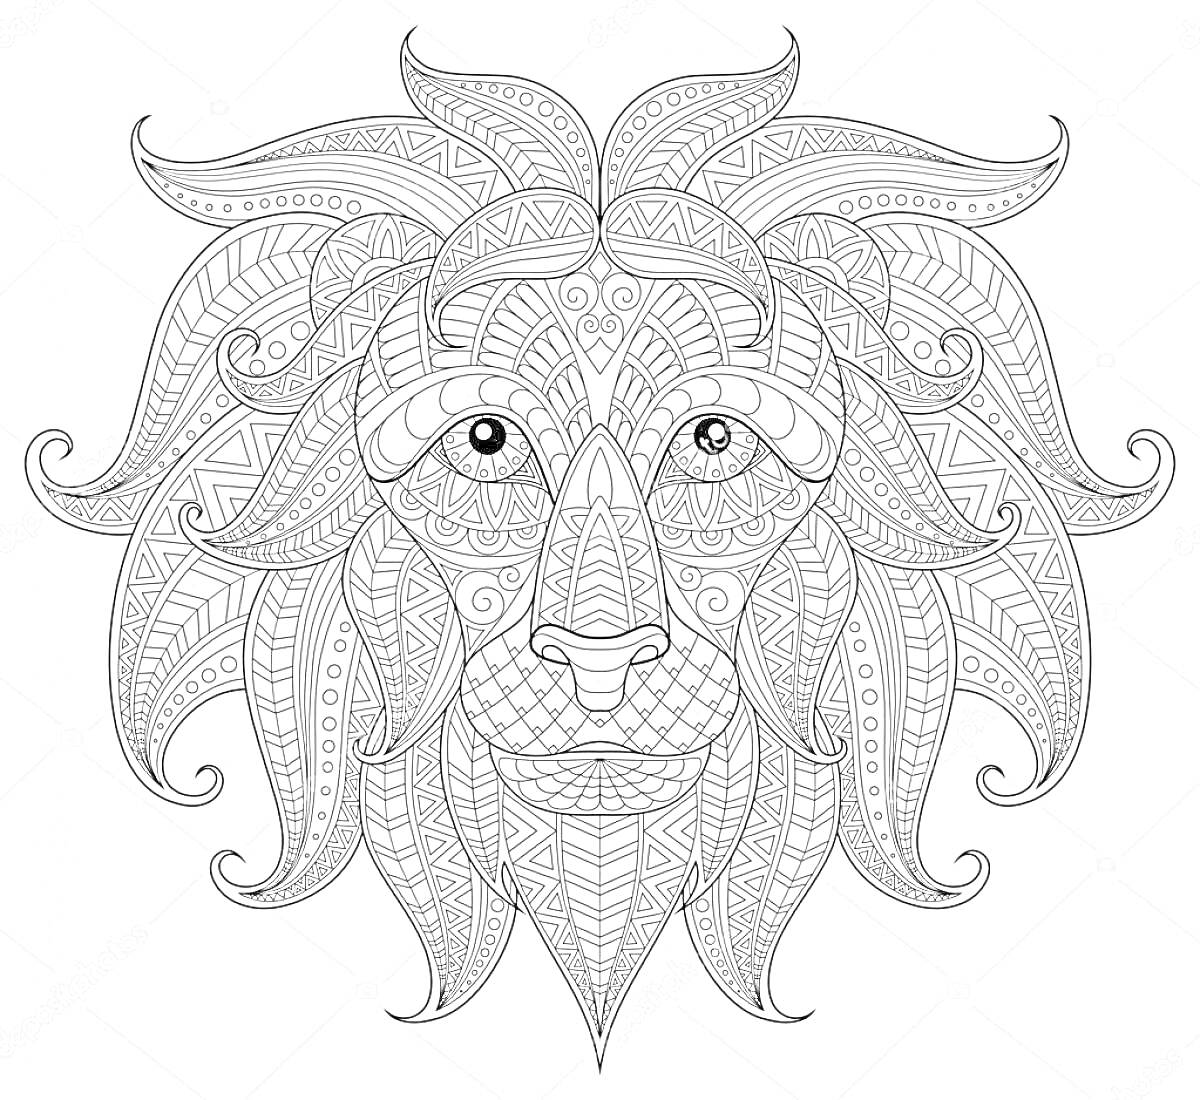 Раскраска Антистресс раскраска с изображением льва, украшенного декоративными узорами и множеством мелких деталей